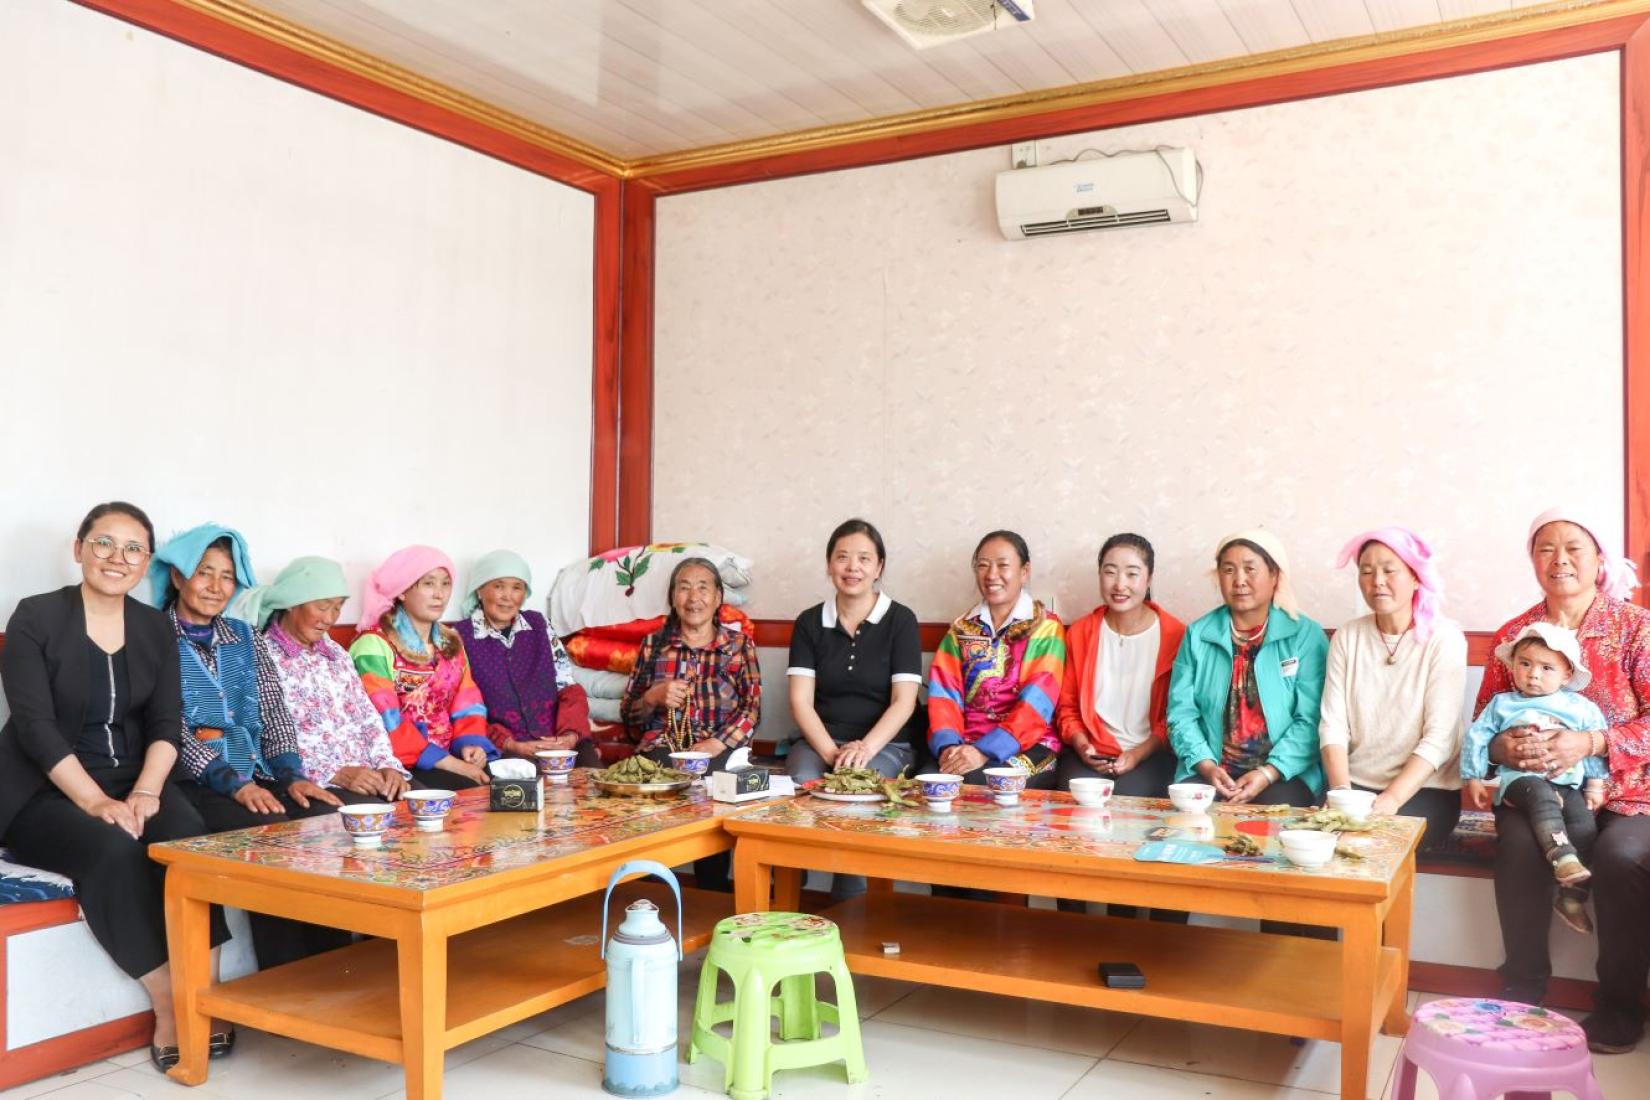 Embroidery workers from Tu Wushi village. © UN Women/Jiayuan Wang